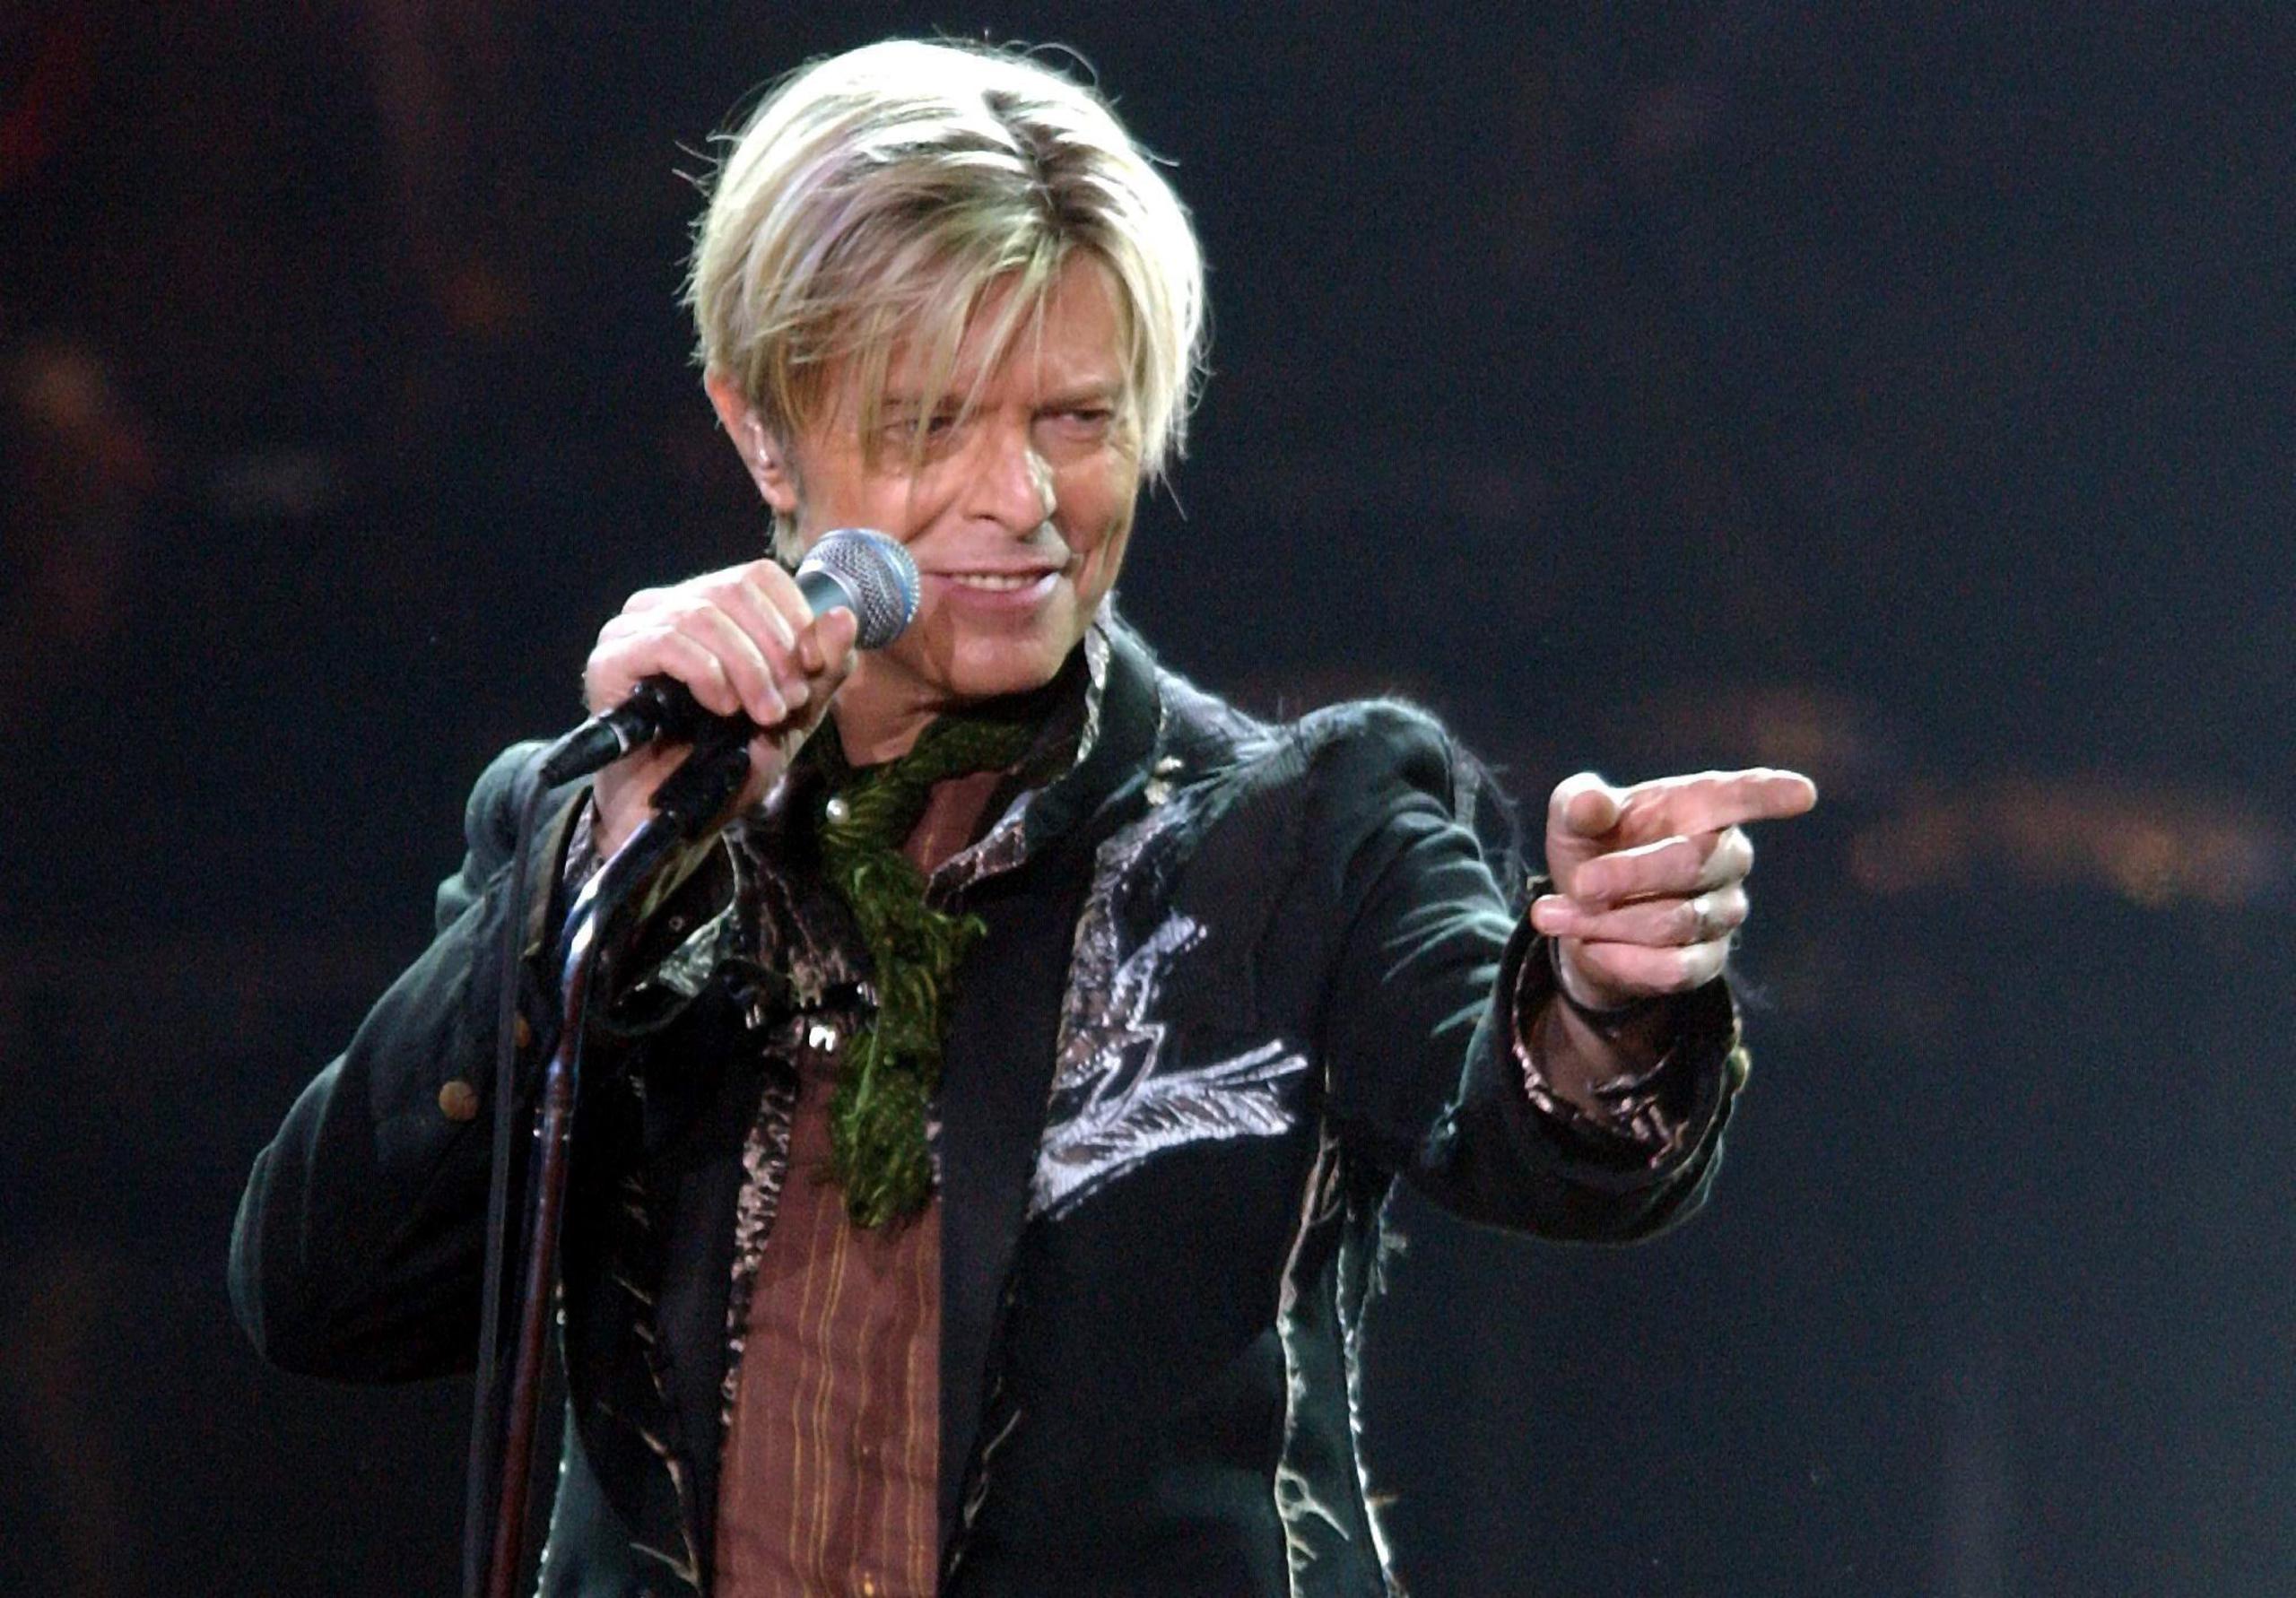 El cantante David Bowie, quien murió en enero de 2016, es considerados por muchos como el padre del "Galm Rock". (Agencia EFE)